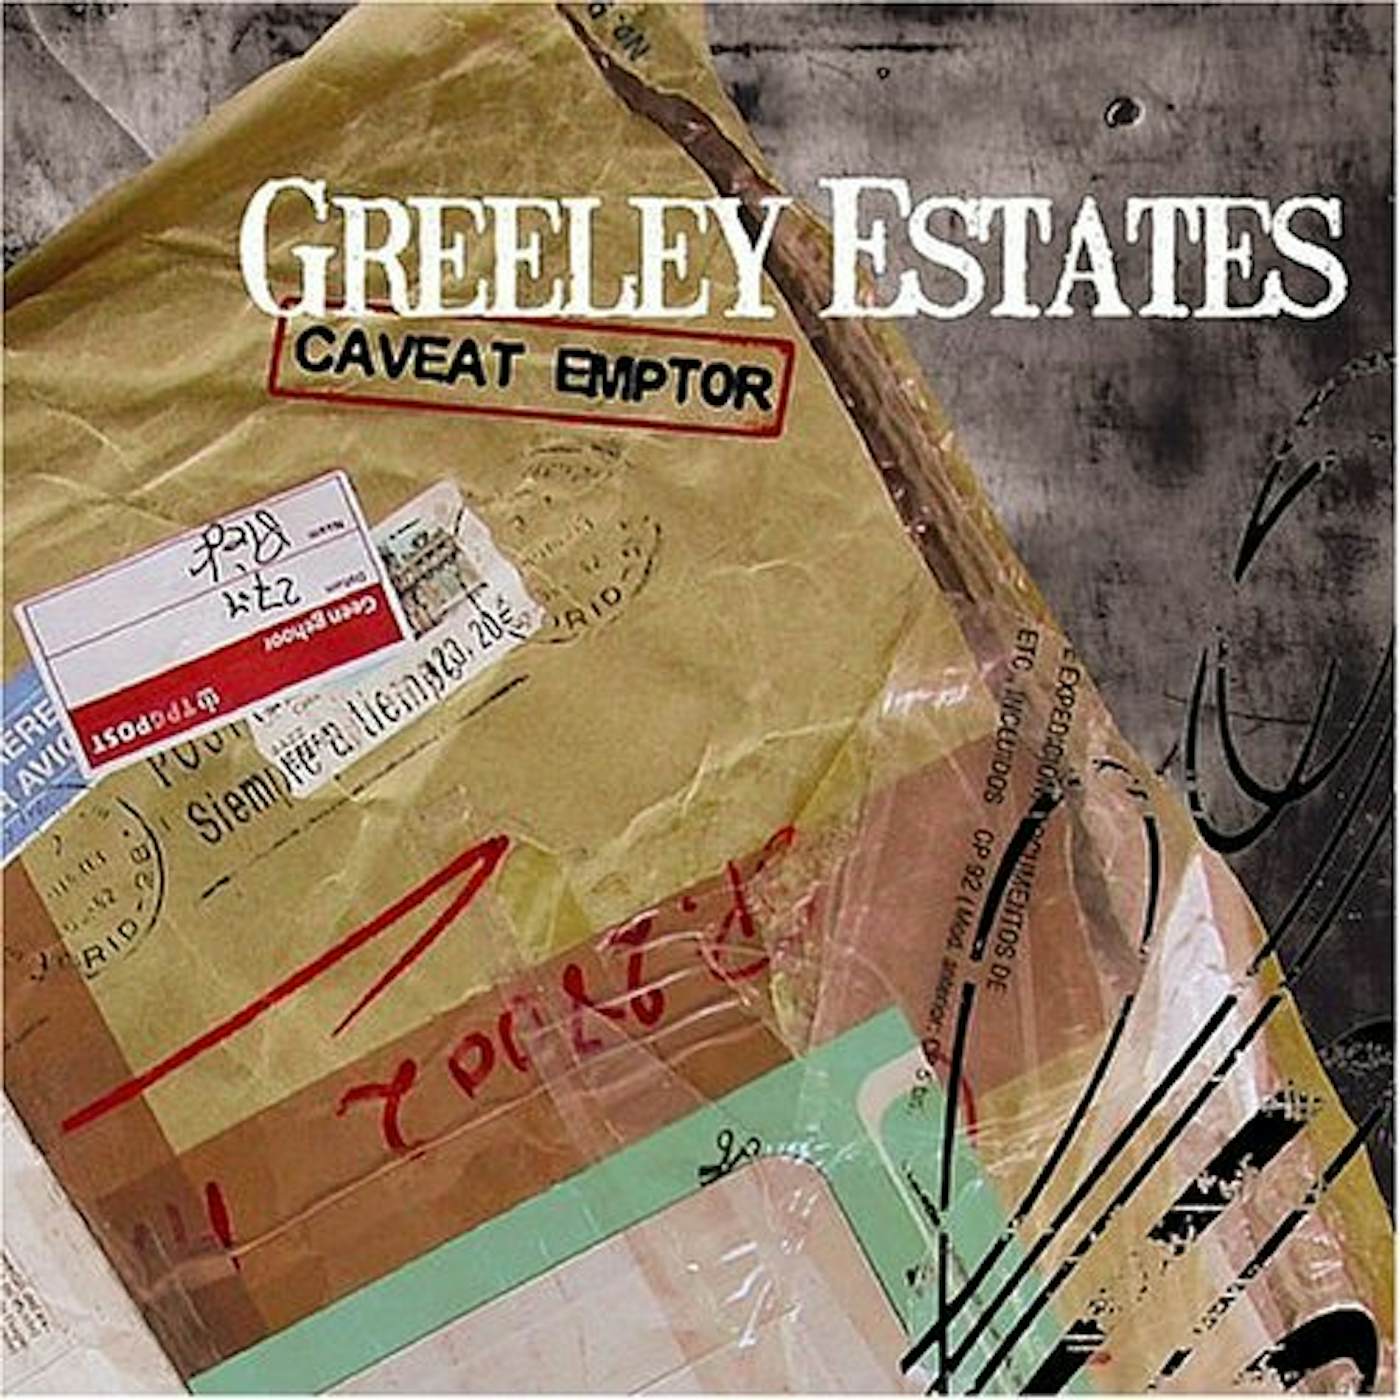 Greeley Estates CAVEAT EMPTOR CD